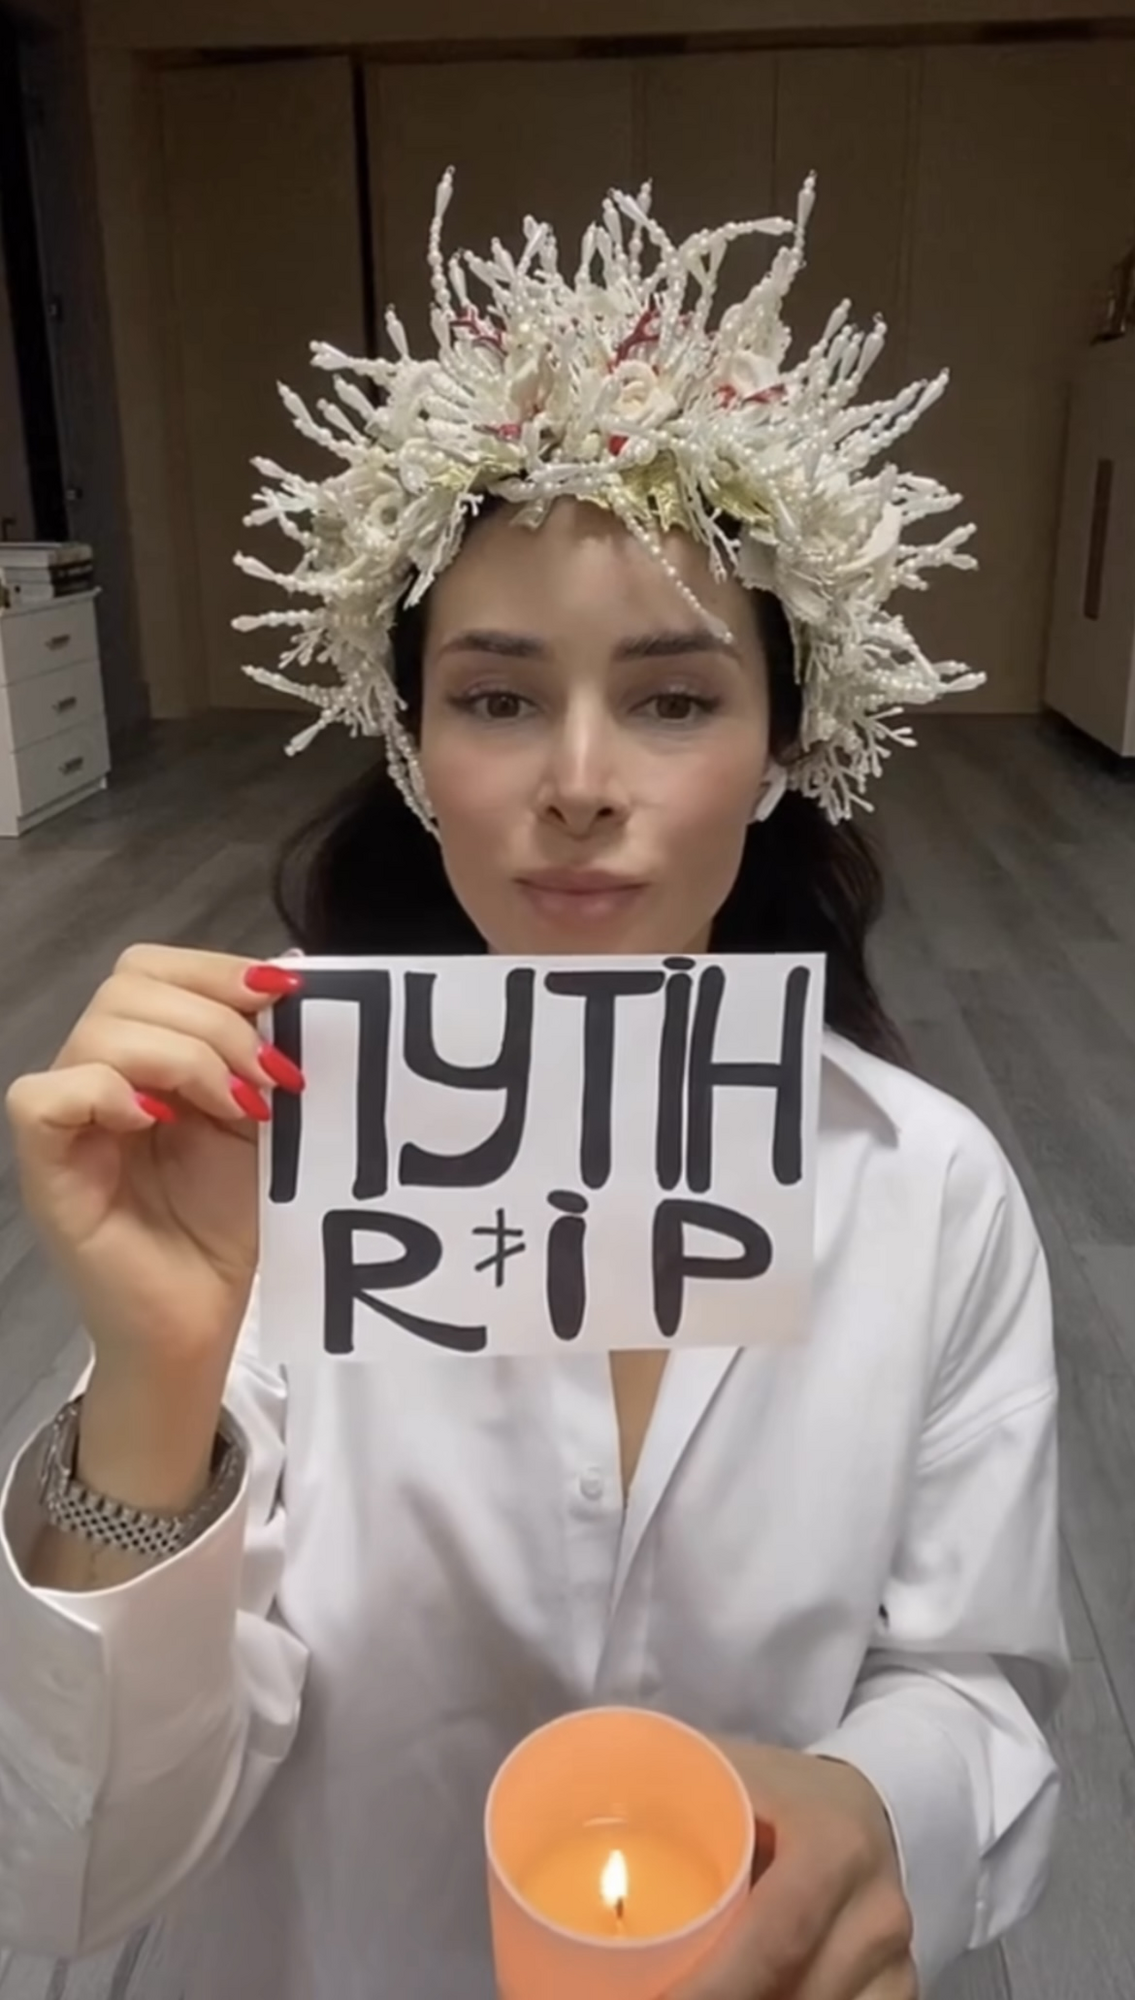 "Путін RIP": Злата Огнєвіч в образі ворожки провела жартівливий обряд. Відео